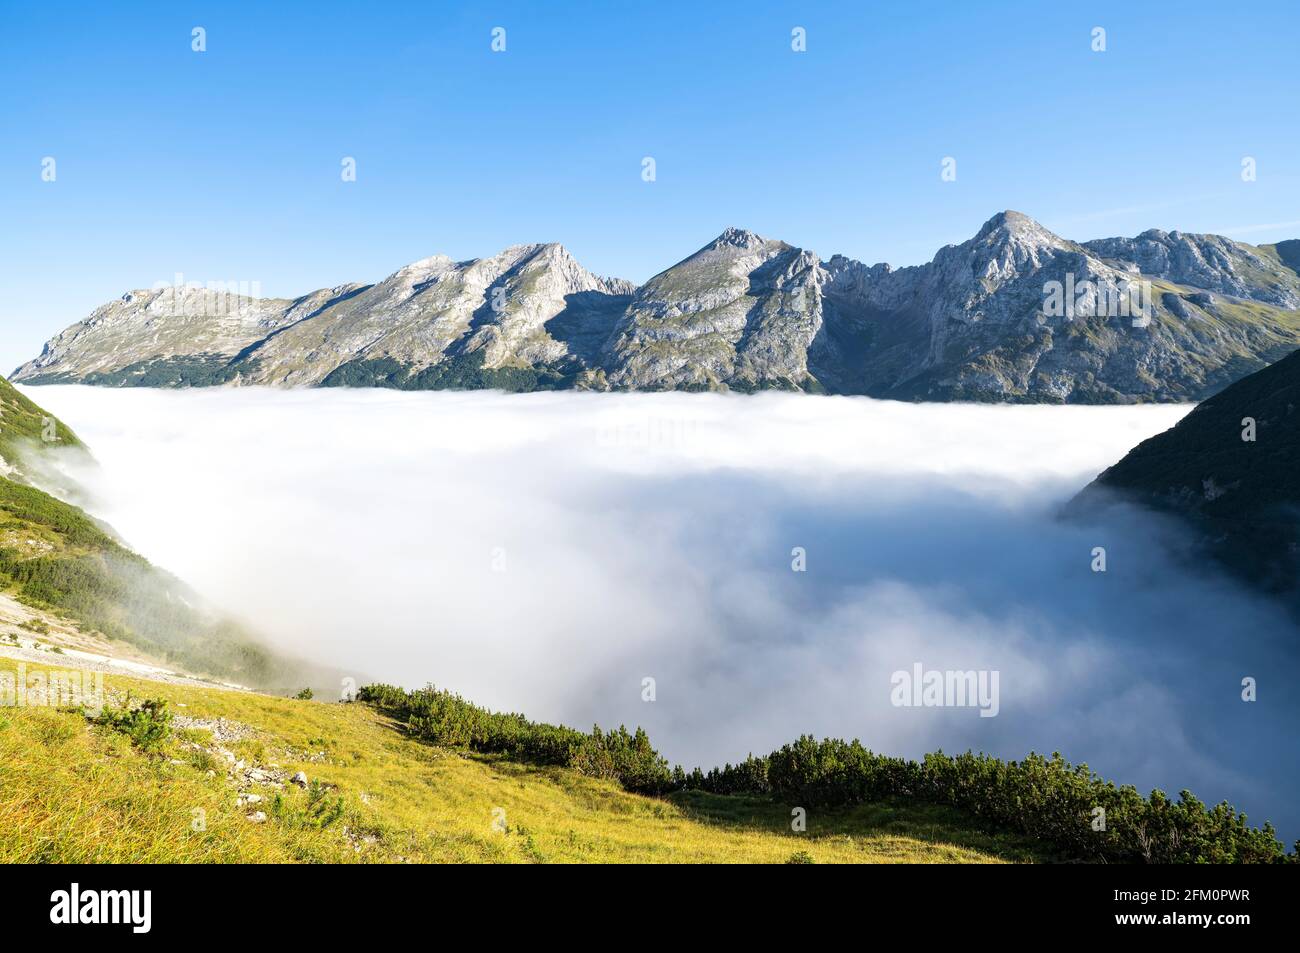 Paesaggio alpino con montagne rocciose sopra uno strato di nebbia in una giornata di sole in estate. Catena montuosa del Karwendel, Tirolo, Austria, Europa Foto Stock